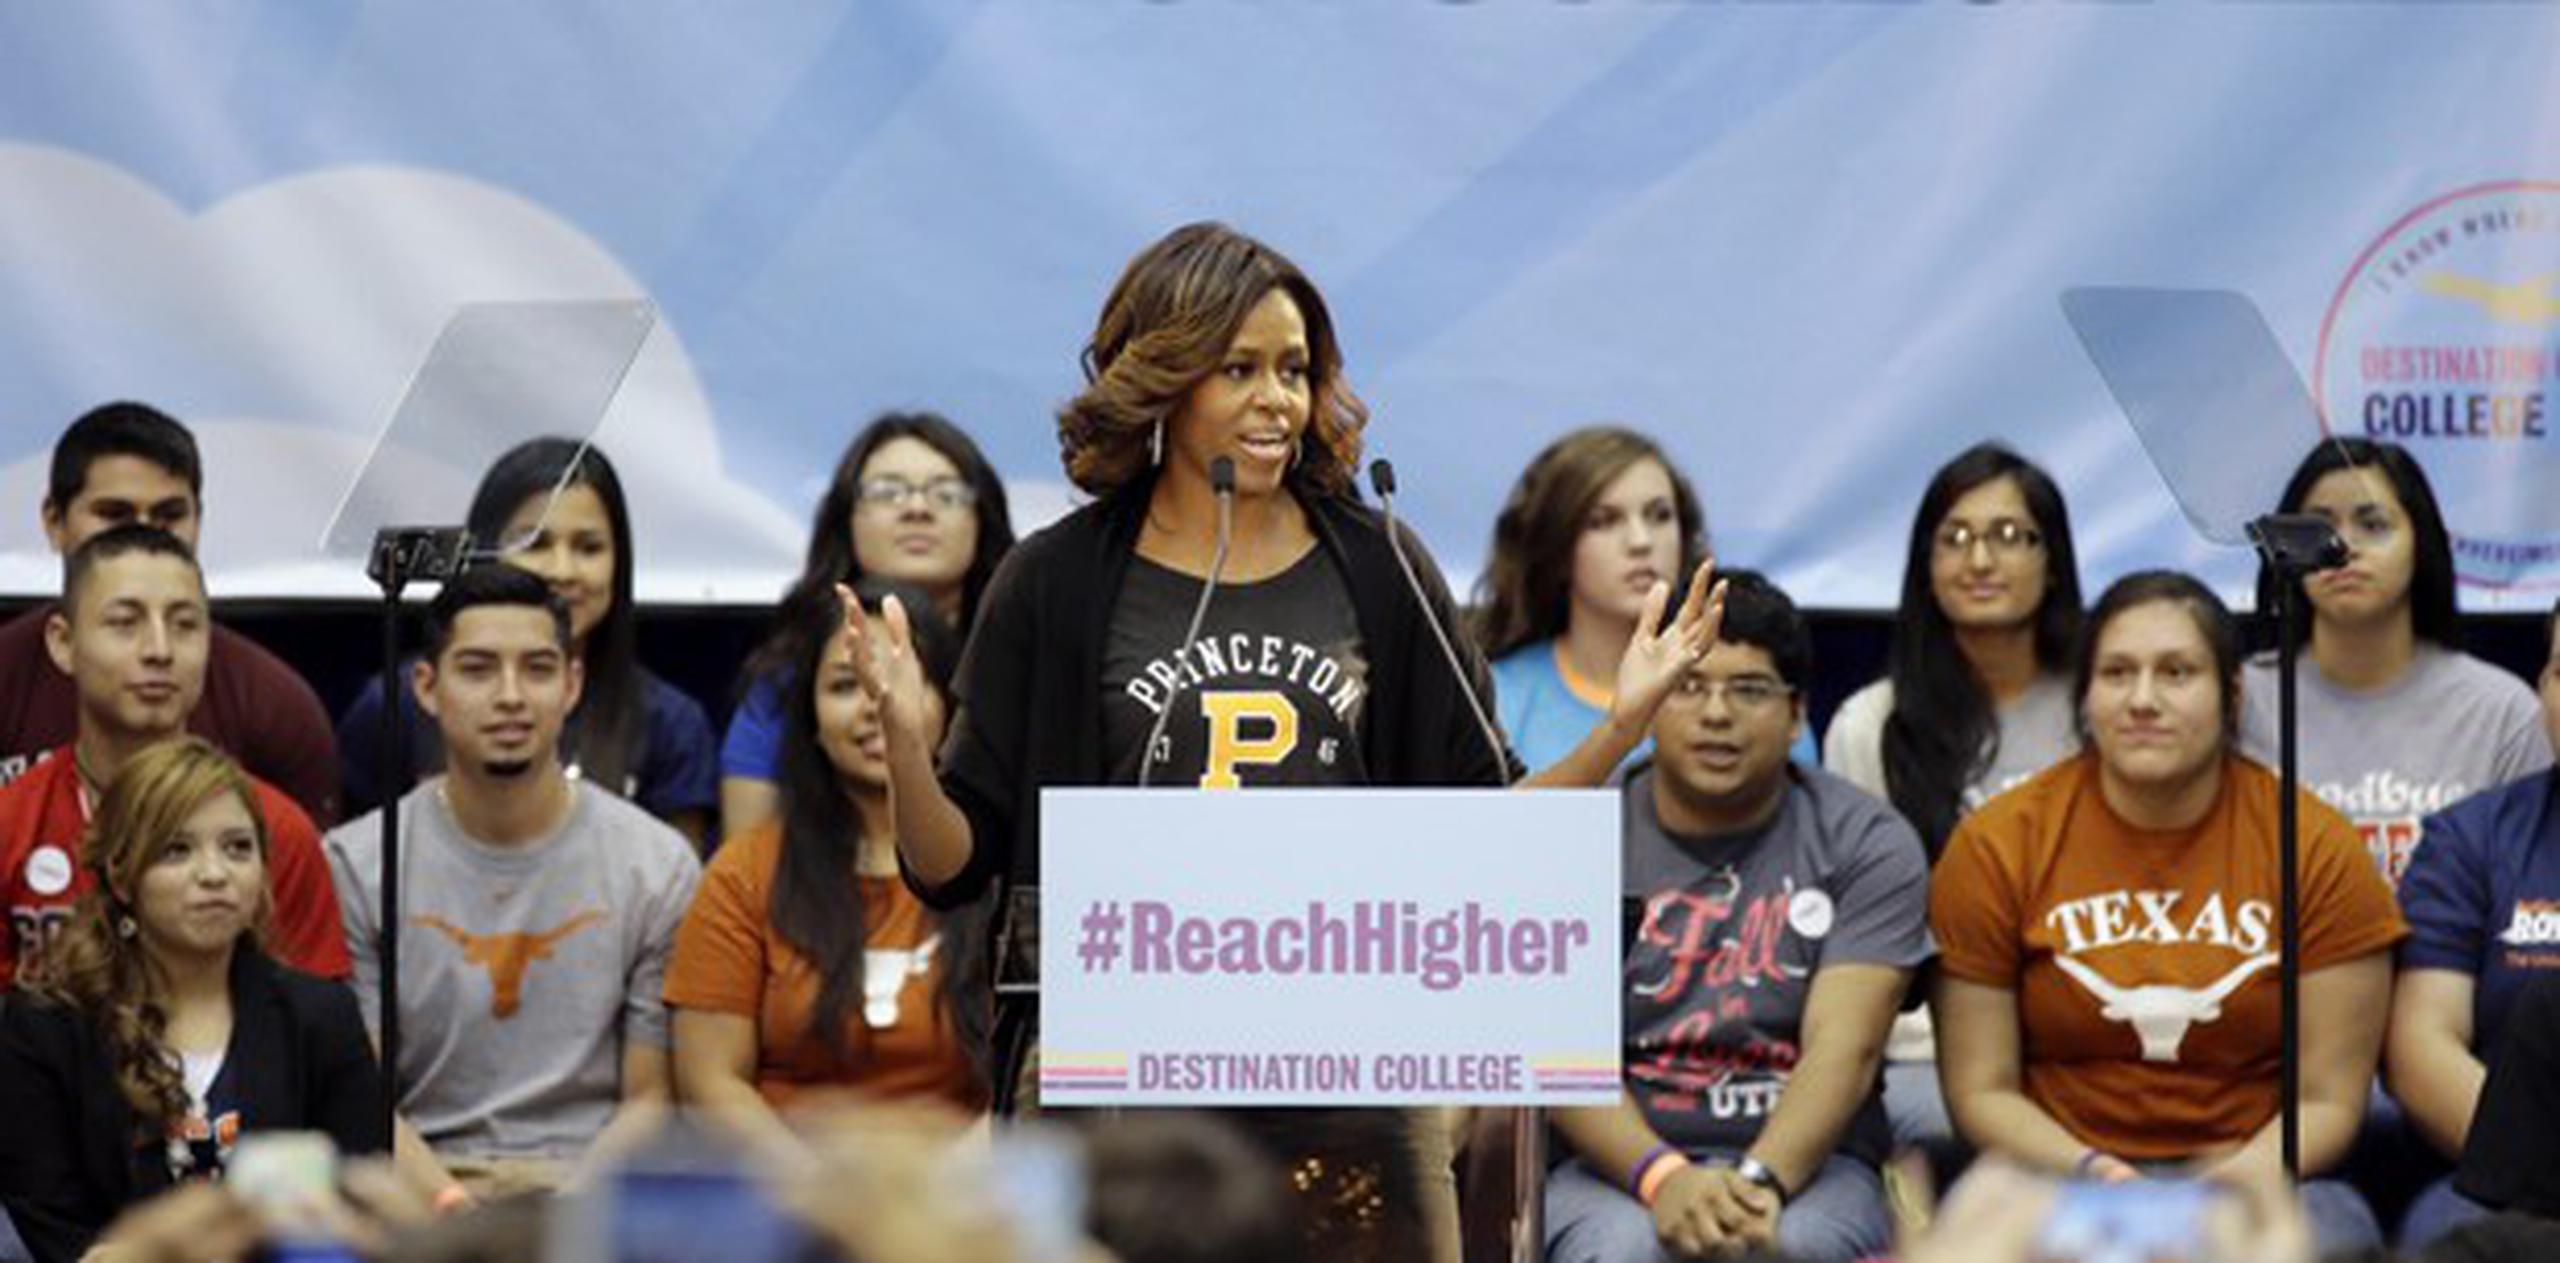 Tras las causas a favor de los veteranos y la alimentación saludable, Michelle Obama presentó hoy en la Universidad de Texas en San Antonio la iniciativa "Reach Higher" (Llegar más alto) y animó a unos 2,000 jóvenes en su compromiso para estudiar. (AP)